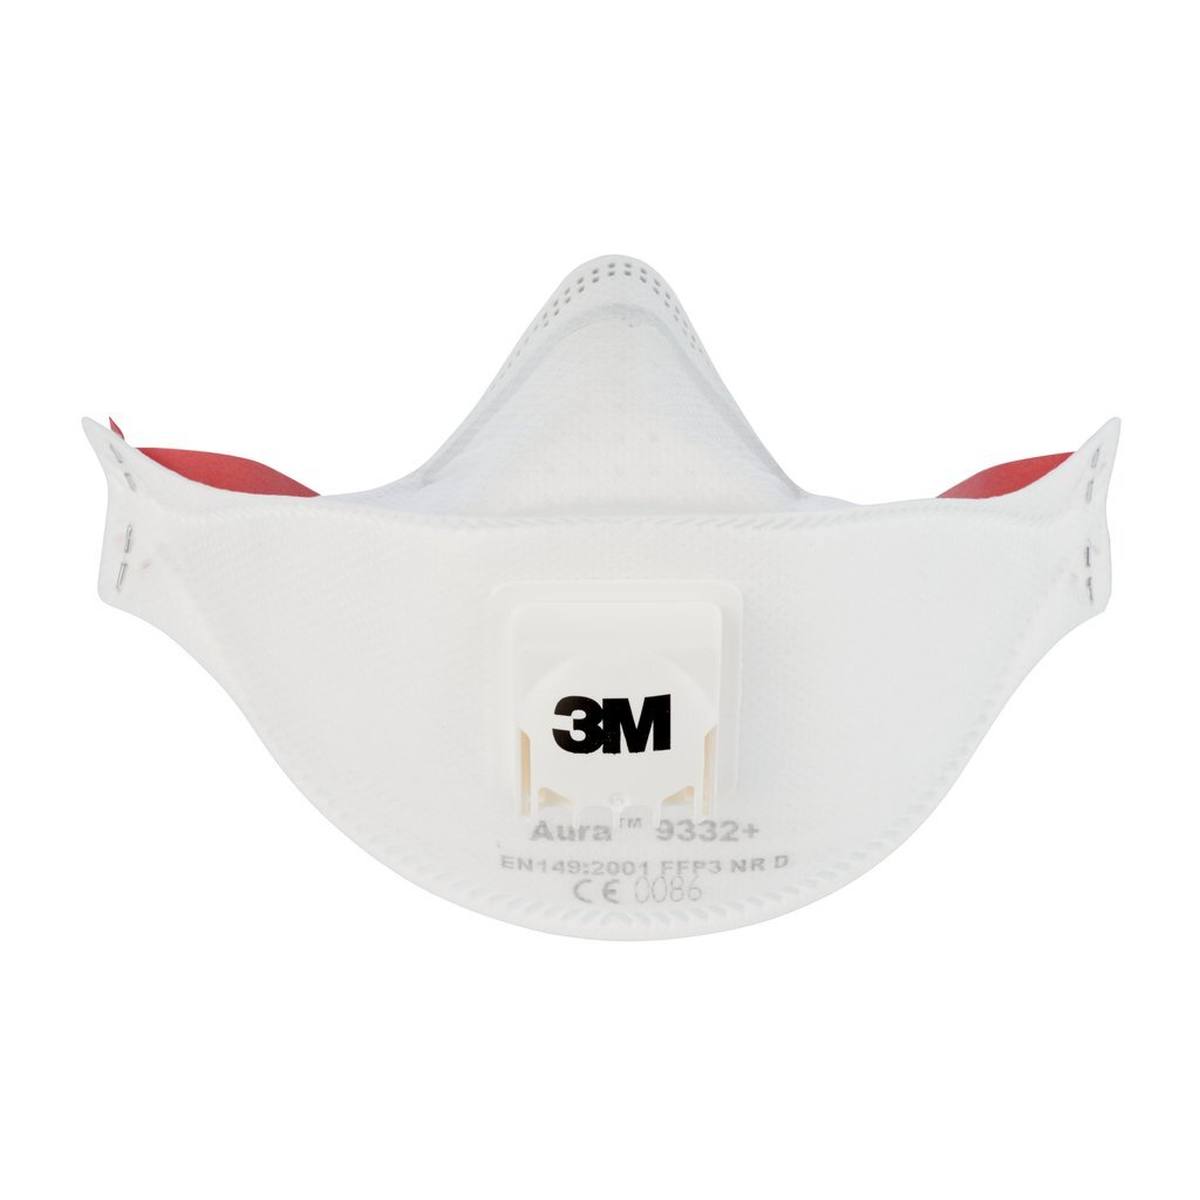 3M 9332+SV Aura Masque de protection respiratoire FFP3 avec valve d'expiration Cool-Flow, jusqu'à 30 fois la valeur limite (emballage individuel hygiénique), petit paquet